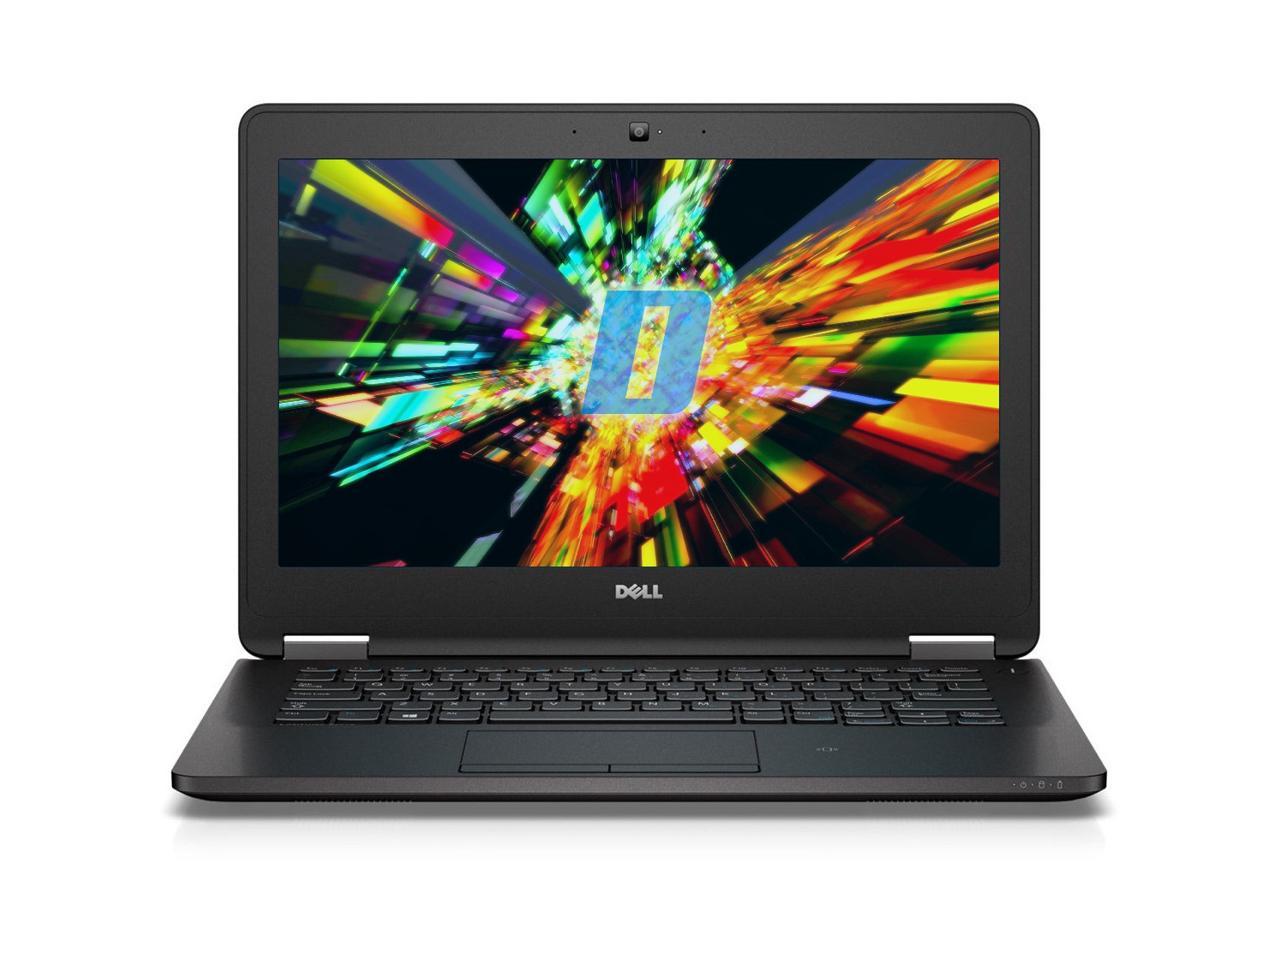 Dell Latitude E7270 12.5" Laptop, Intel Core i7 6600U 2.6Ghz, 16GB DDR4, 256GB M.2 SSD, HDMI, Webcam, Windows 10 Pro x64